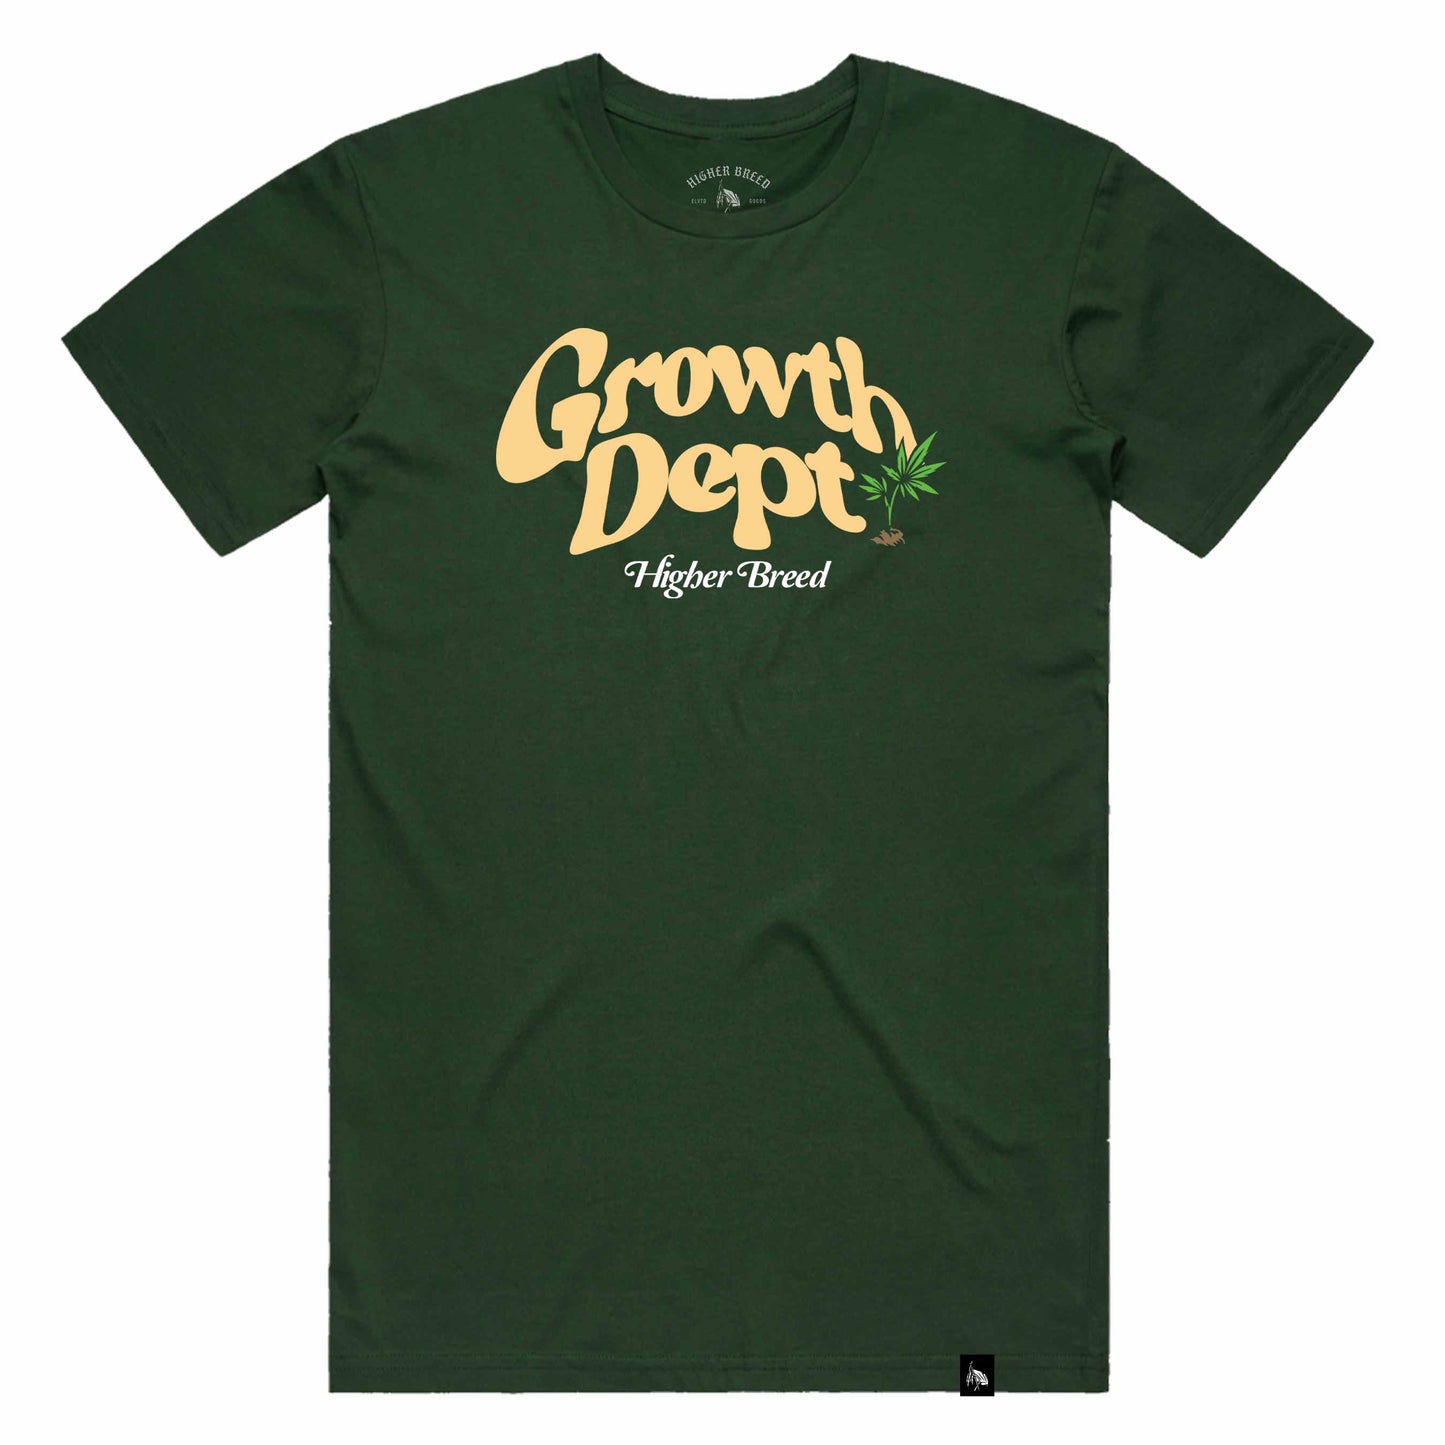 Higher Breed - Growth Dept - T-Shirt (Green)